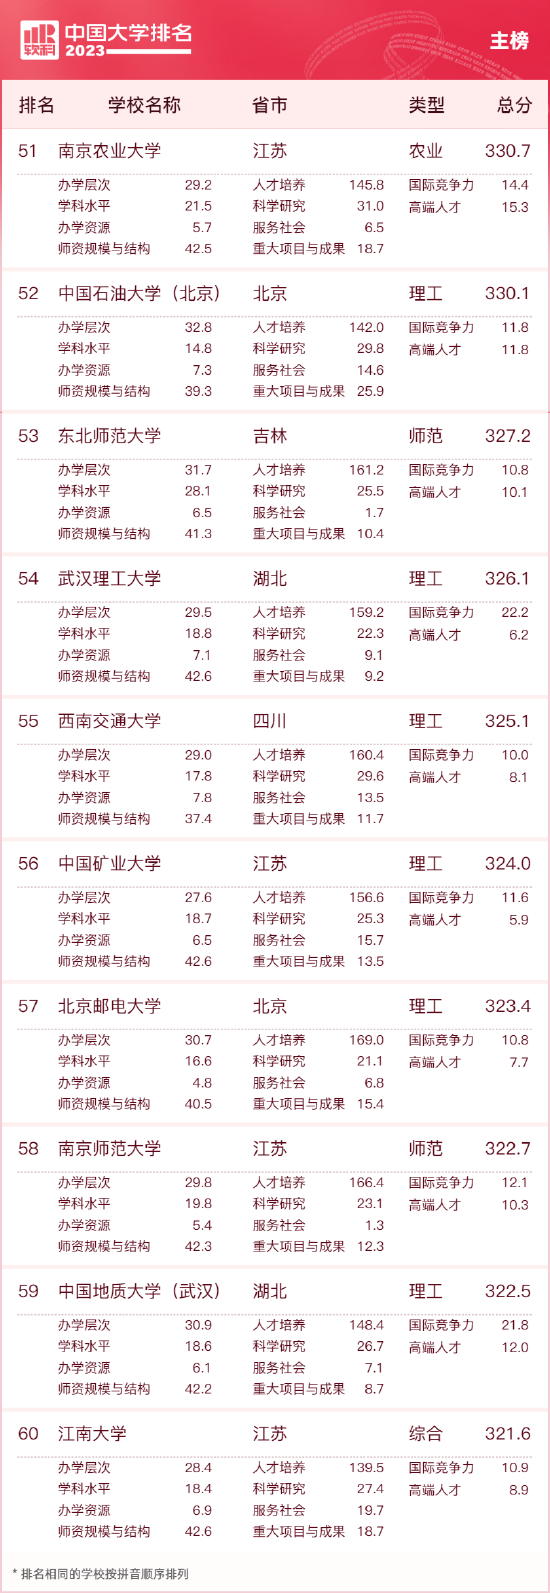 2023中国大学排名公布 清华北大浙大连续9年蝉联三甲 第6张